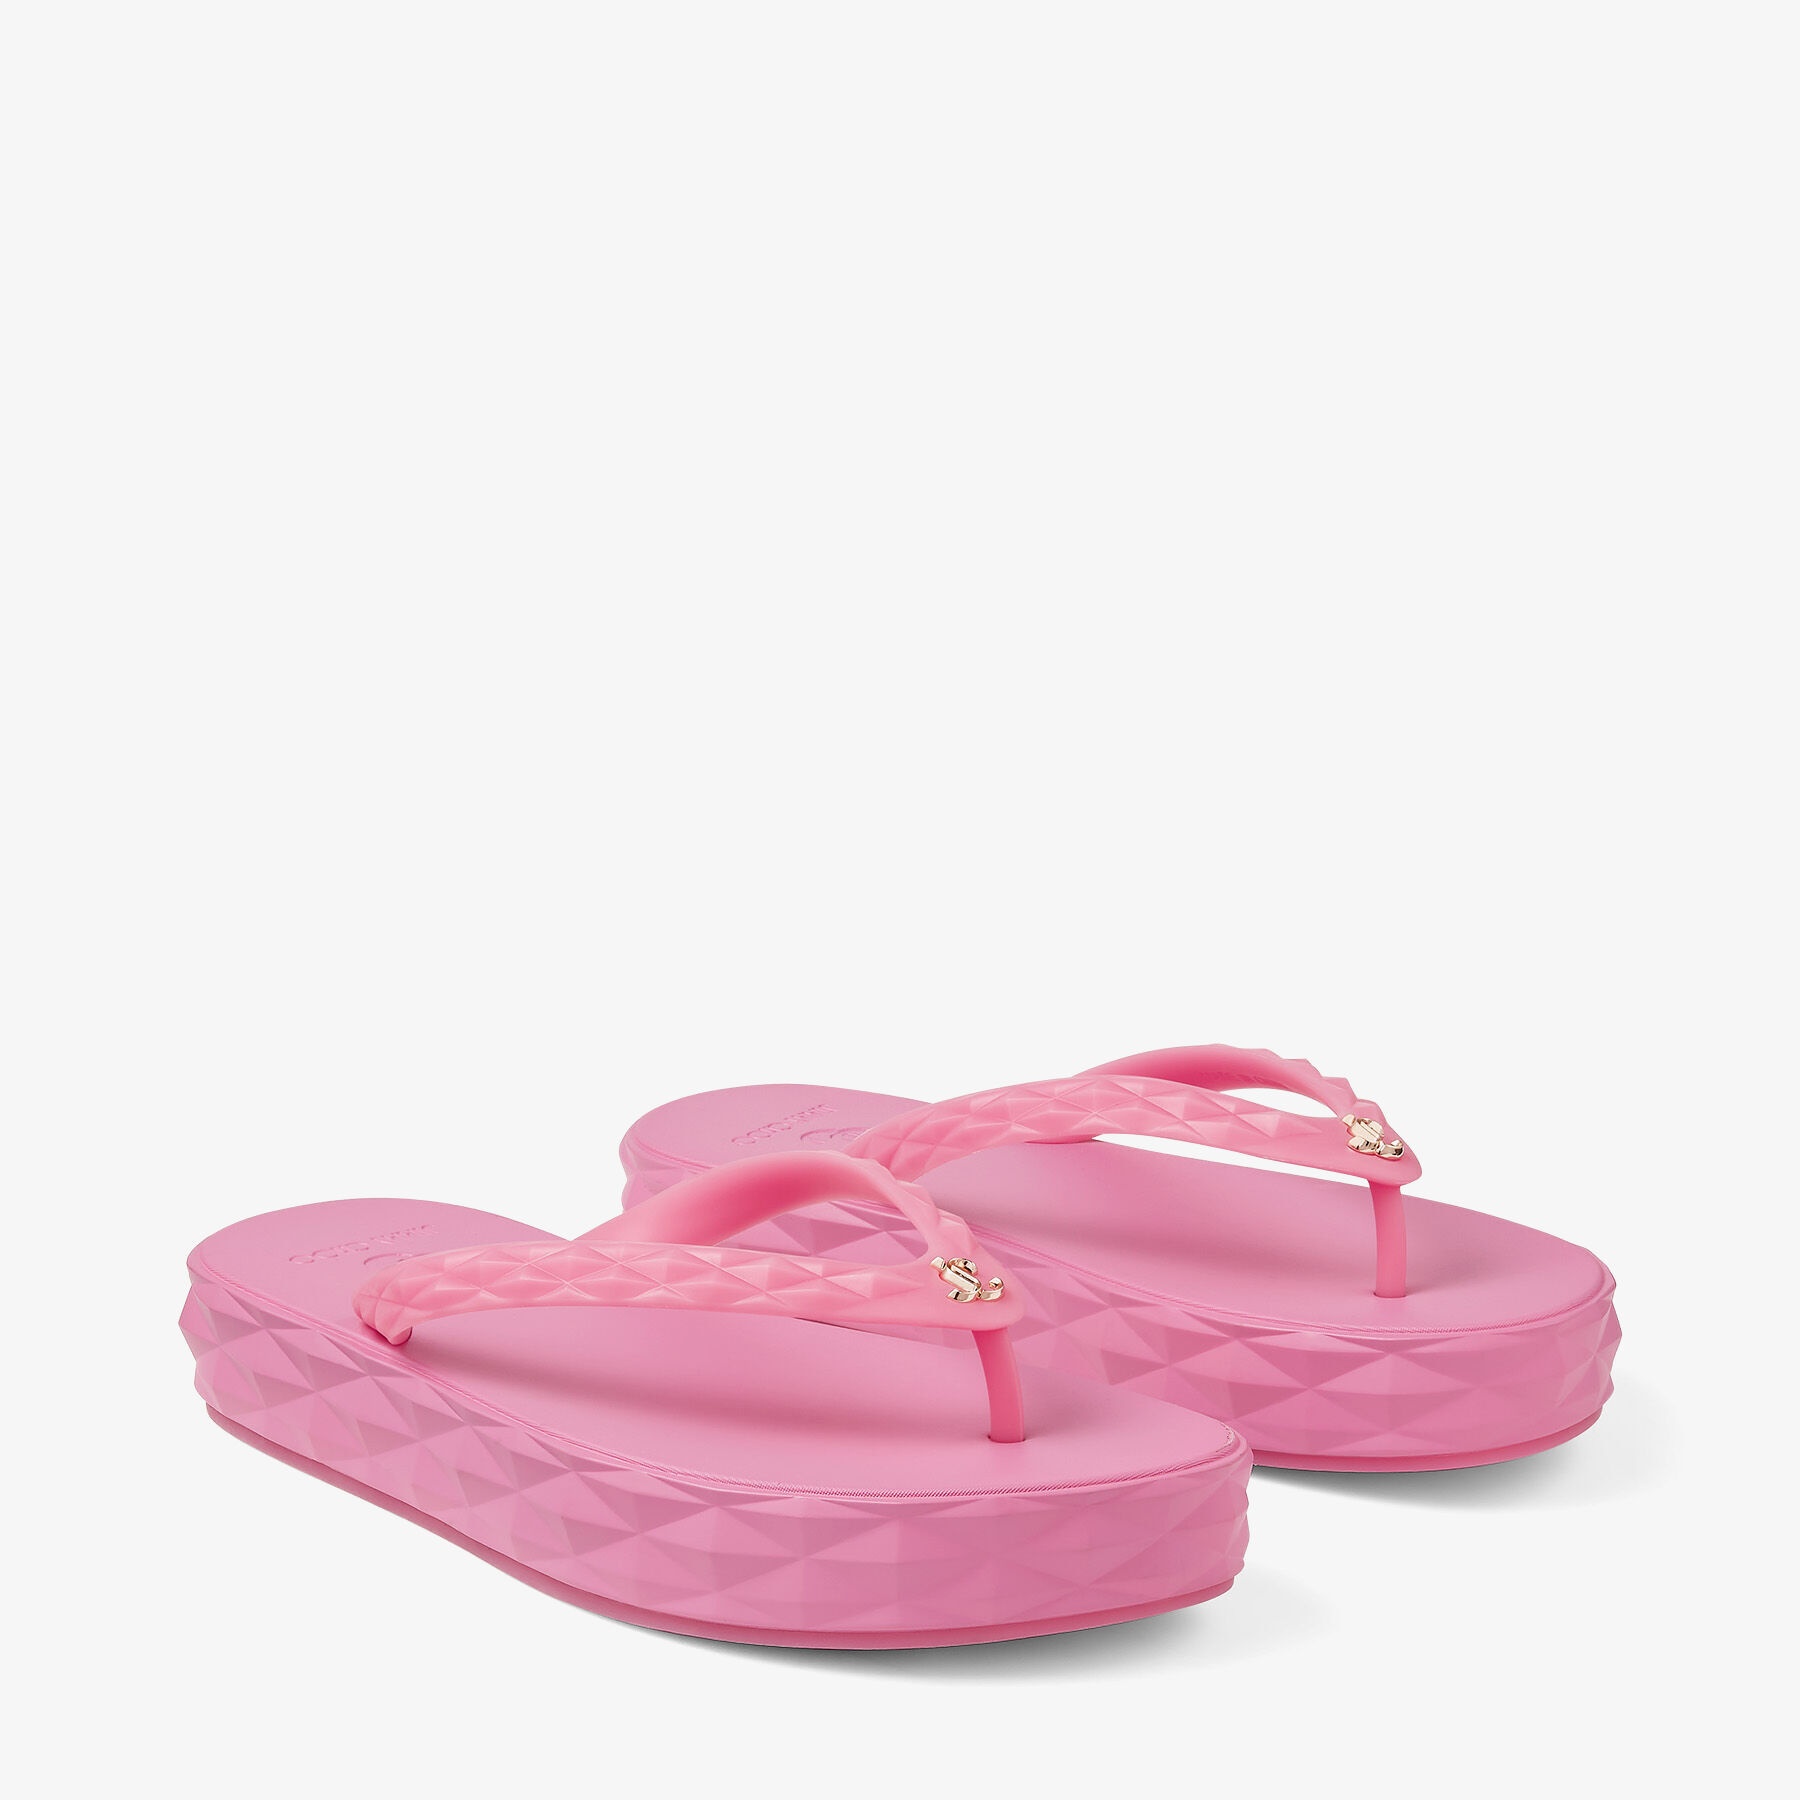 Diamond Flip Flop
Candy Pink Rubber Flip-Flops - 3